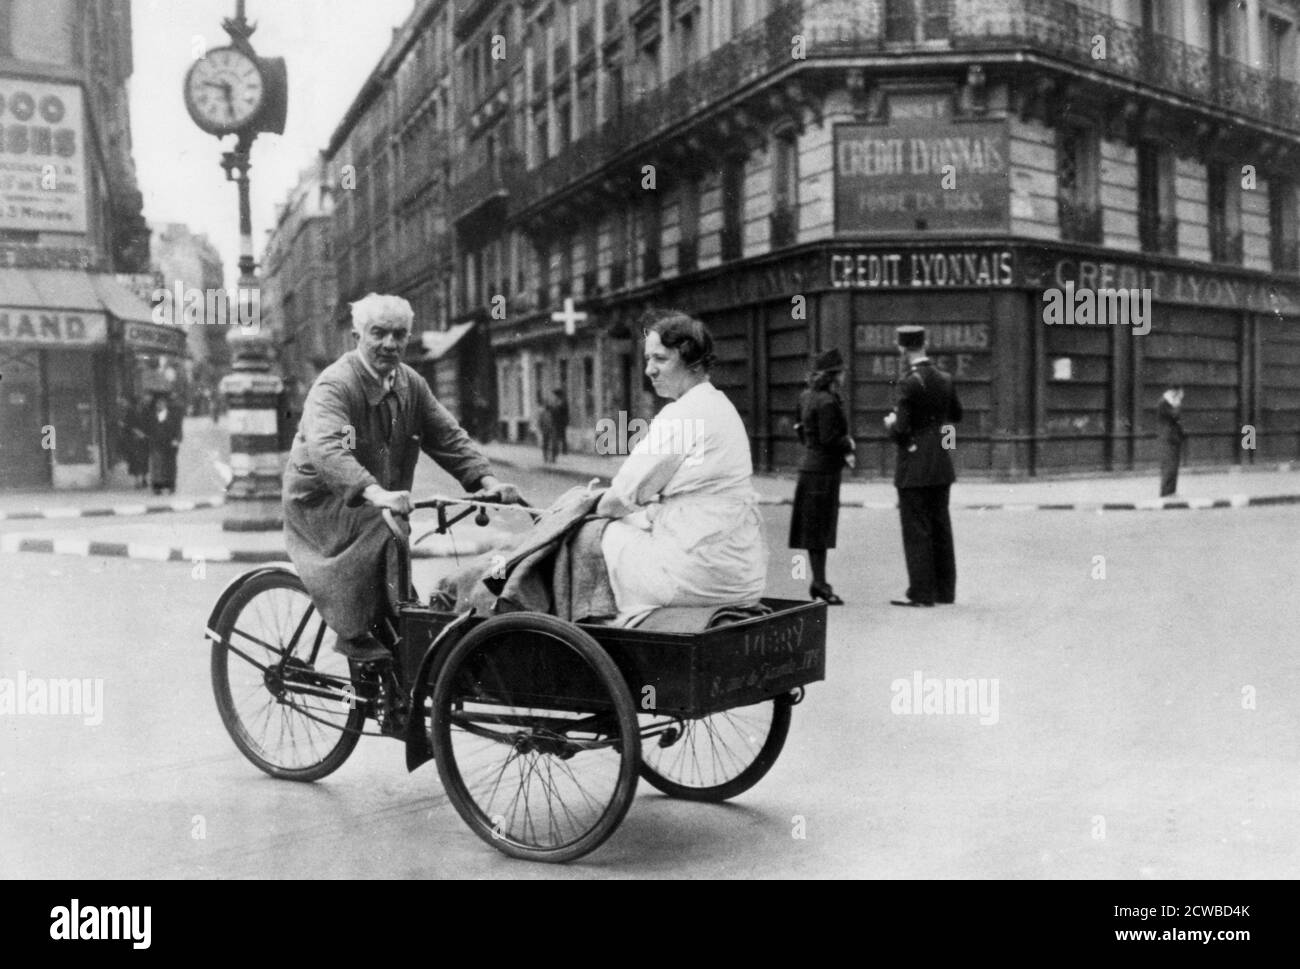 Véhicule à vélo improvisé, Paris occupé par l'Allemagne, 1940-1944. Avec des pénuries d'essence et des voitures privées confisquées par les Allemands, les propriétaires de bicyclettes les ont adaptées pour transporter leurs familles. Le photographe est inconnu. Banque D'Images